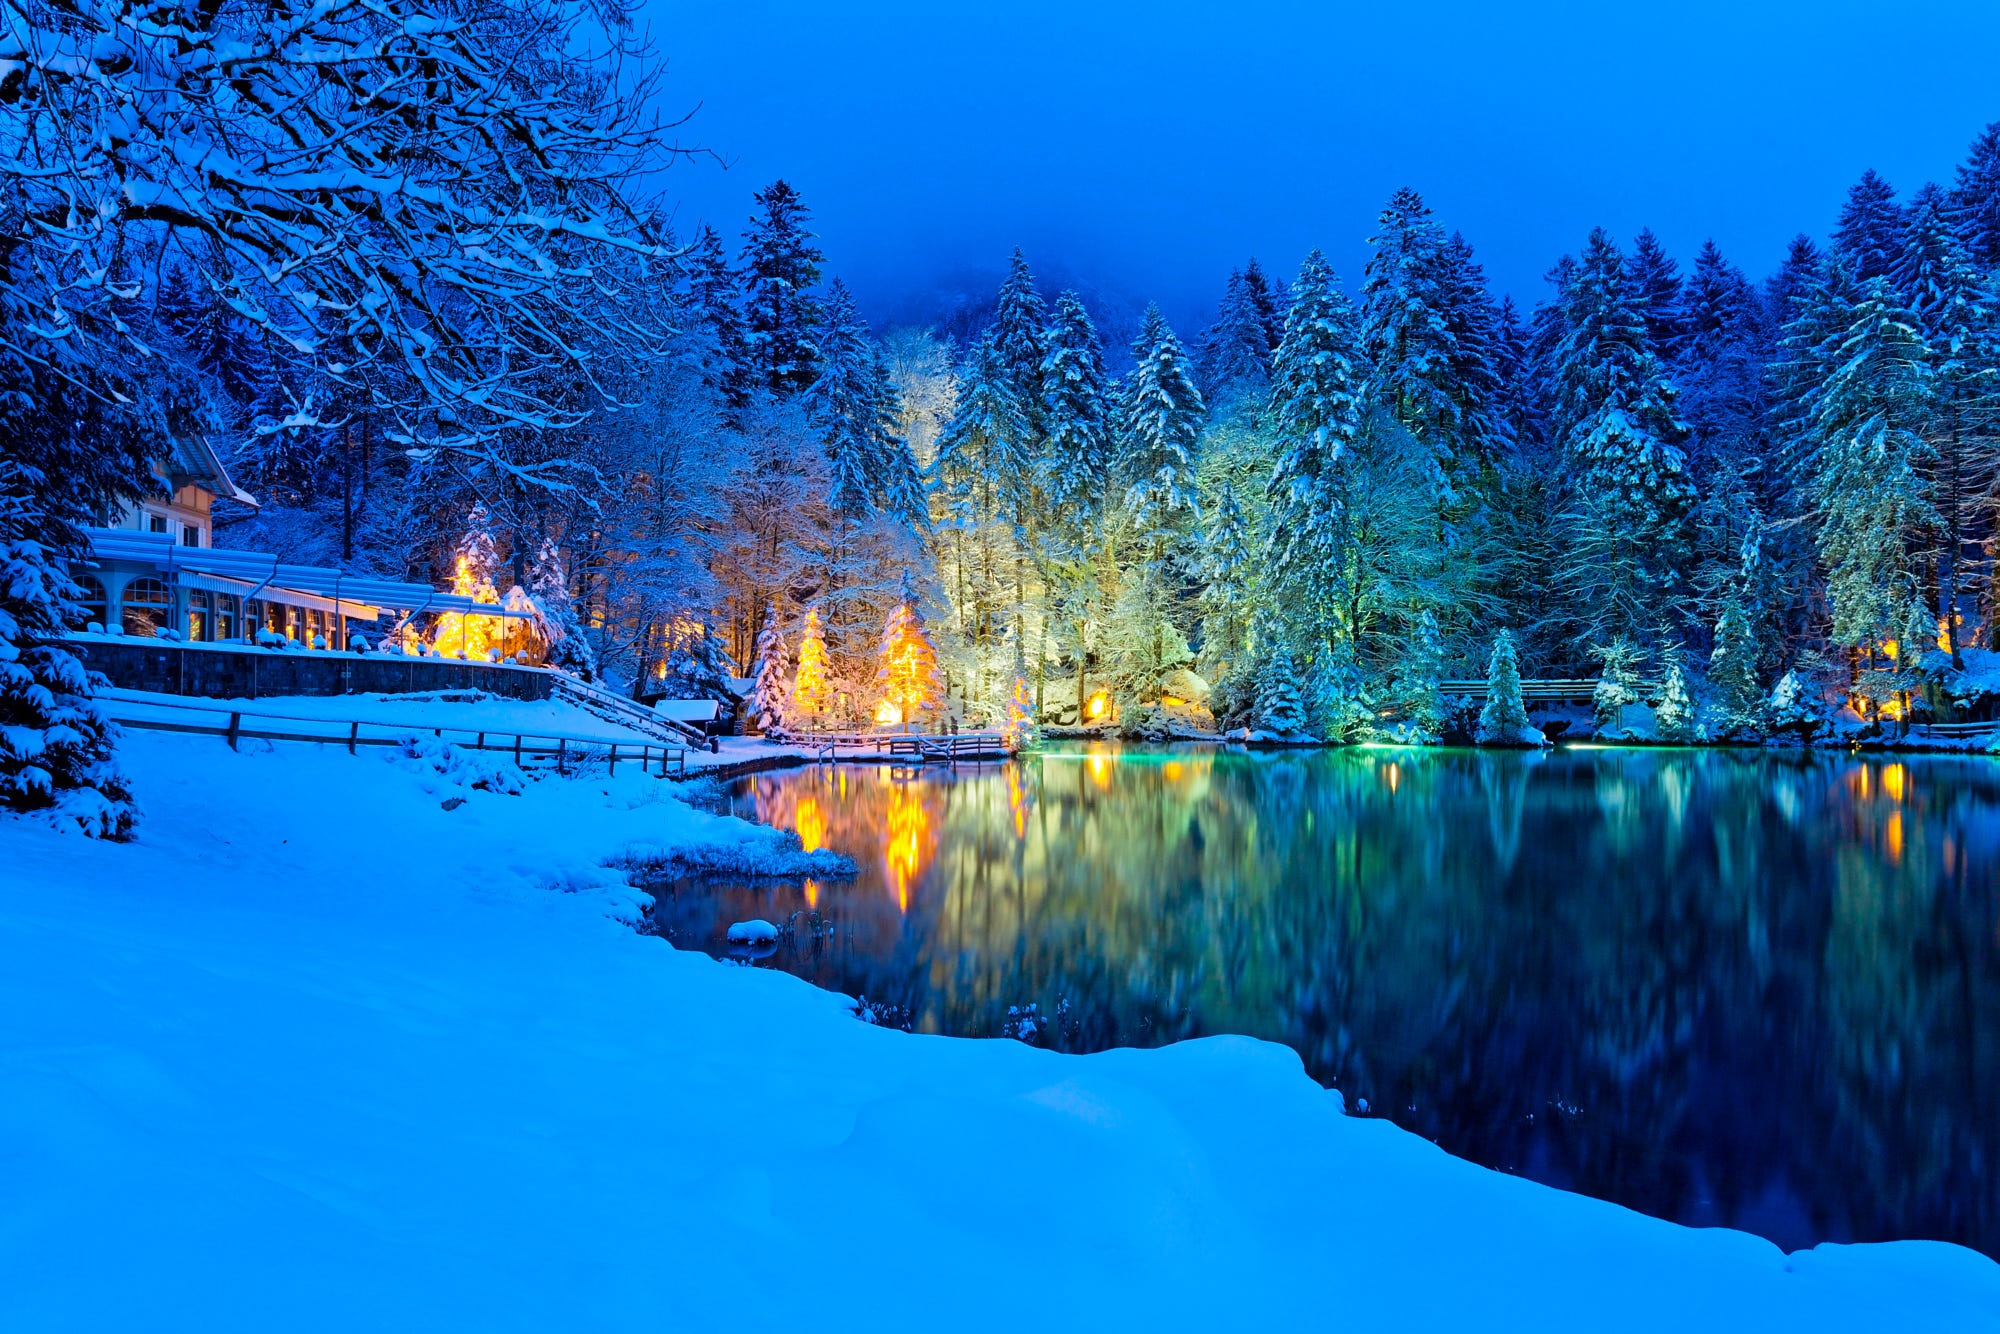 Blausee, Nature Park, Блау, вечер, горы, деревья, ели, зима, лес, озеро, отражение, пейзаж, подсветка, природа, снег, швейцария